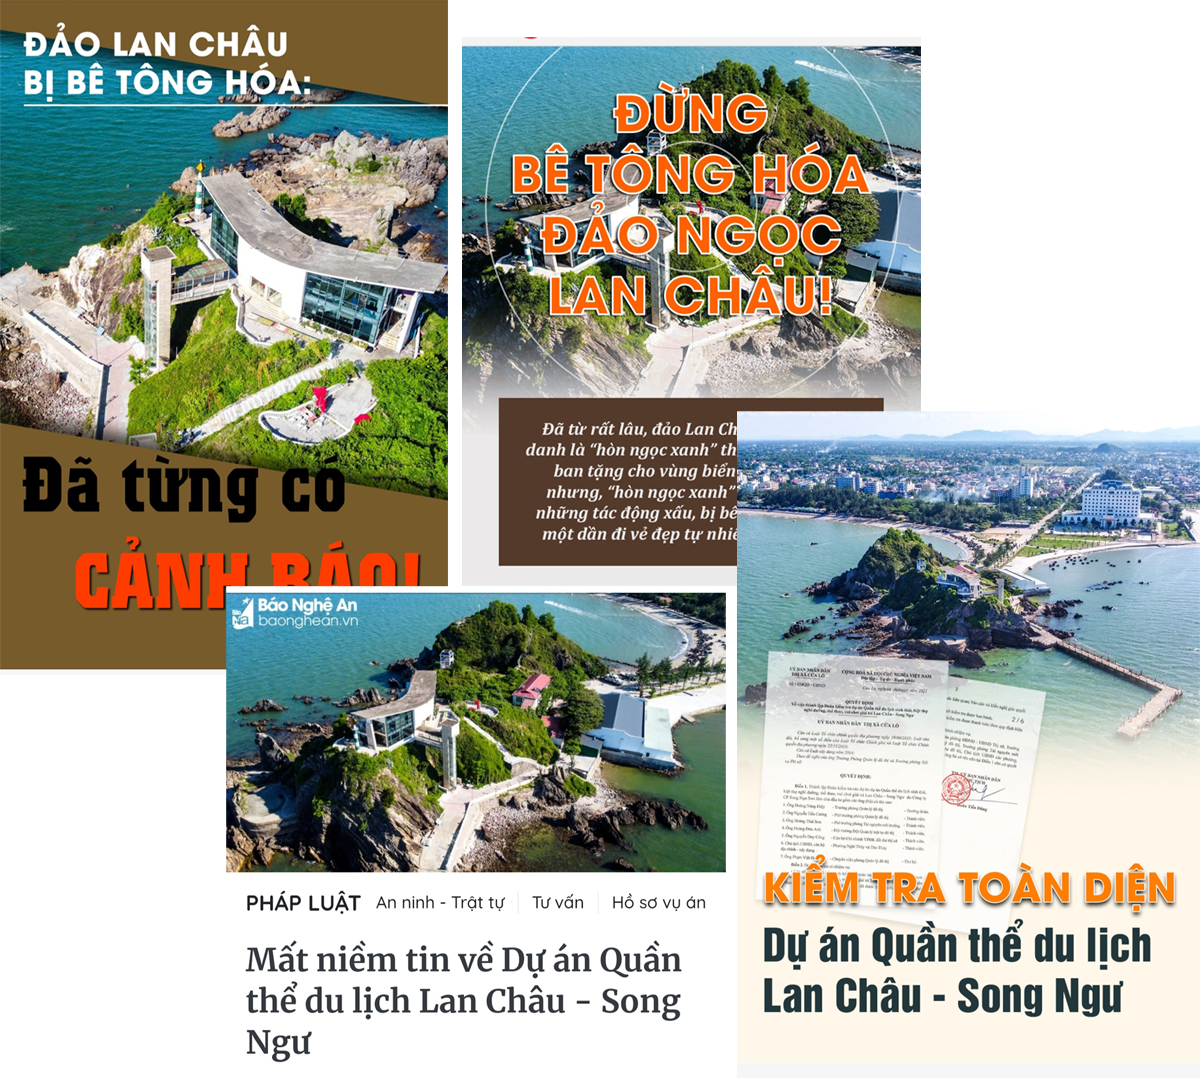 Bìa một số bài viết về Dự án Quần thể du lịch sinh thái, biệt thự nghỉ dưỡng, thể thao, vui chơi giải trí Lan Châu - Song Ngư.